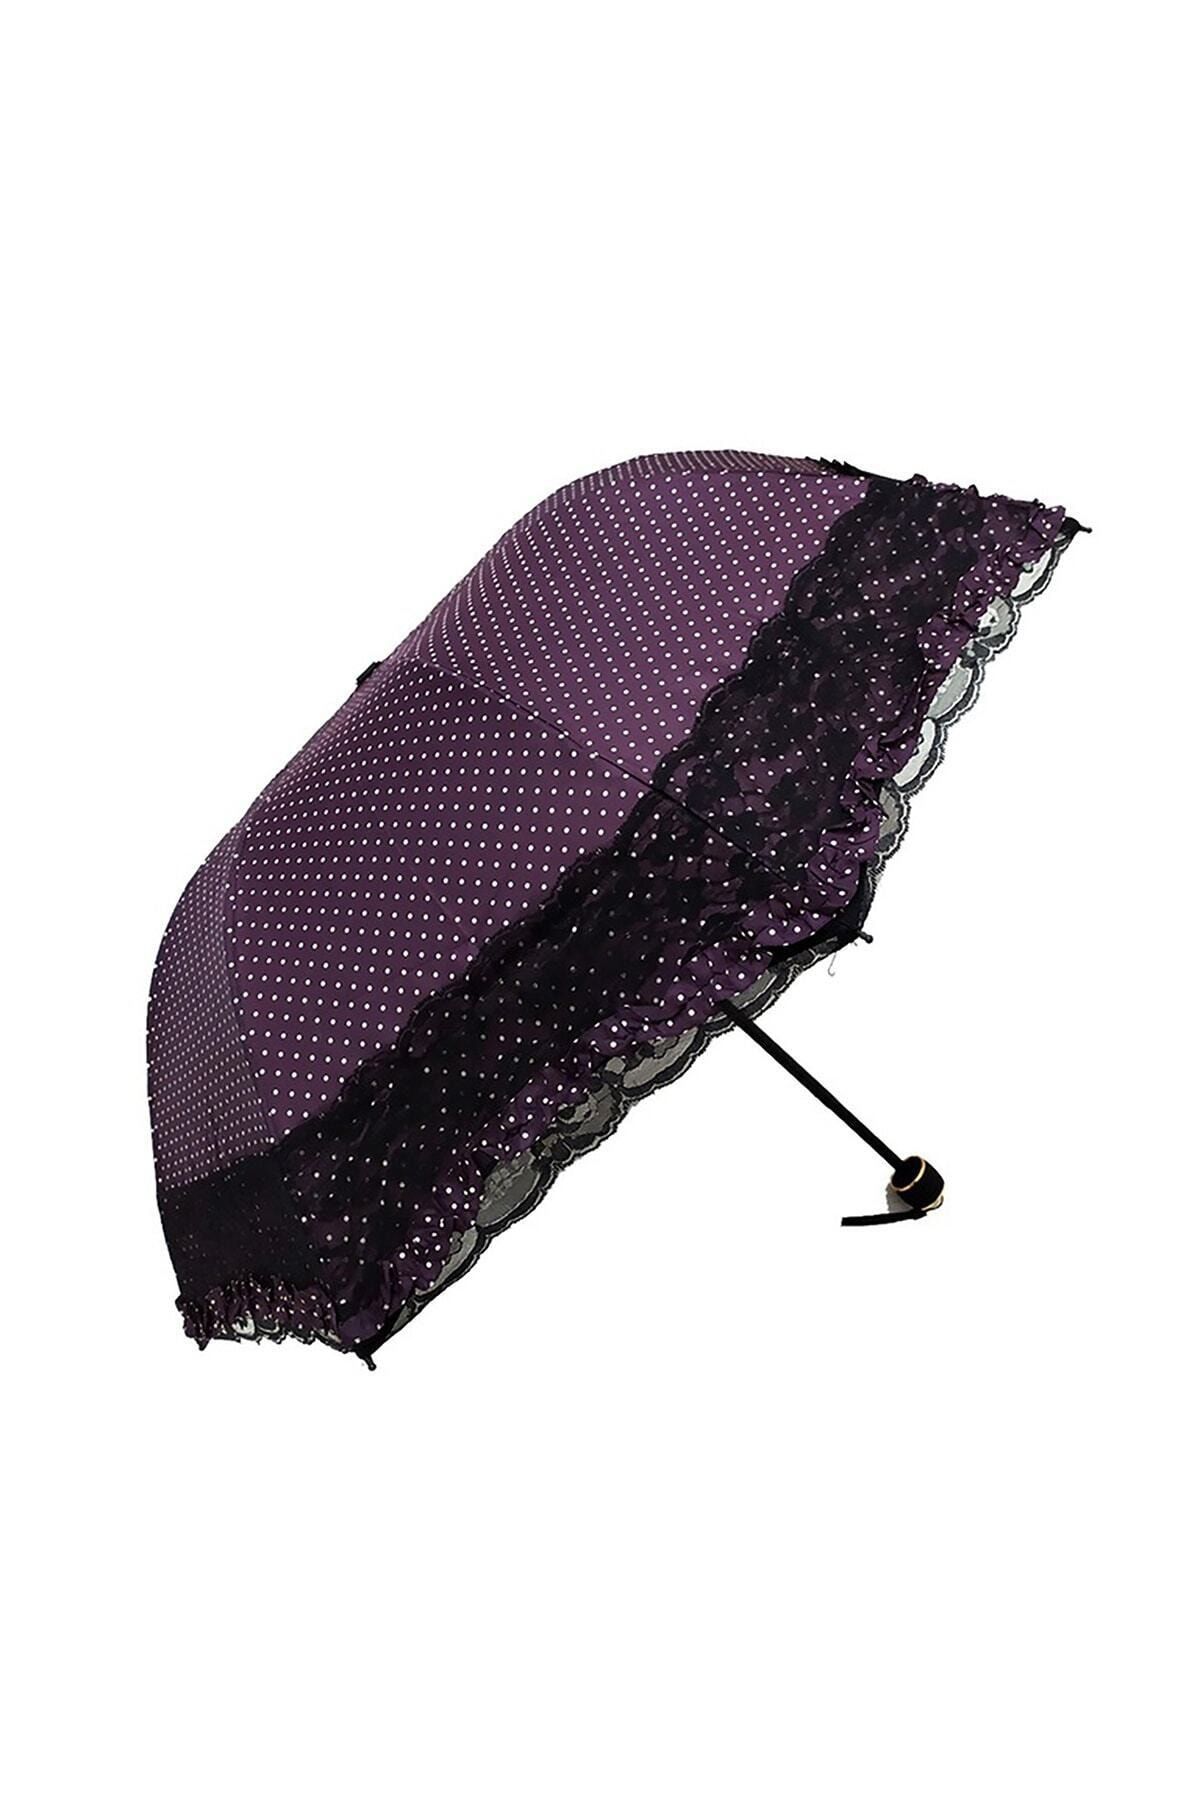 SincapDükkan Dantelli Şık Mor Kadın Şemsiyesi Özel Çantalı Dantel Detaylı 8 Telli Sağlam Manuel Açılır Şemsiye